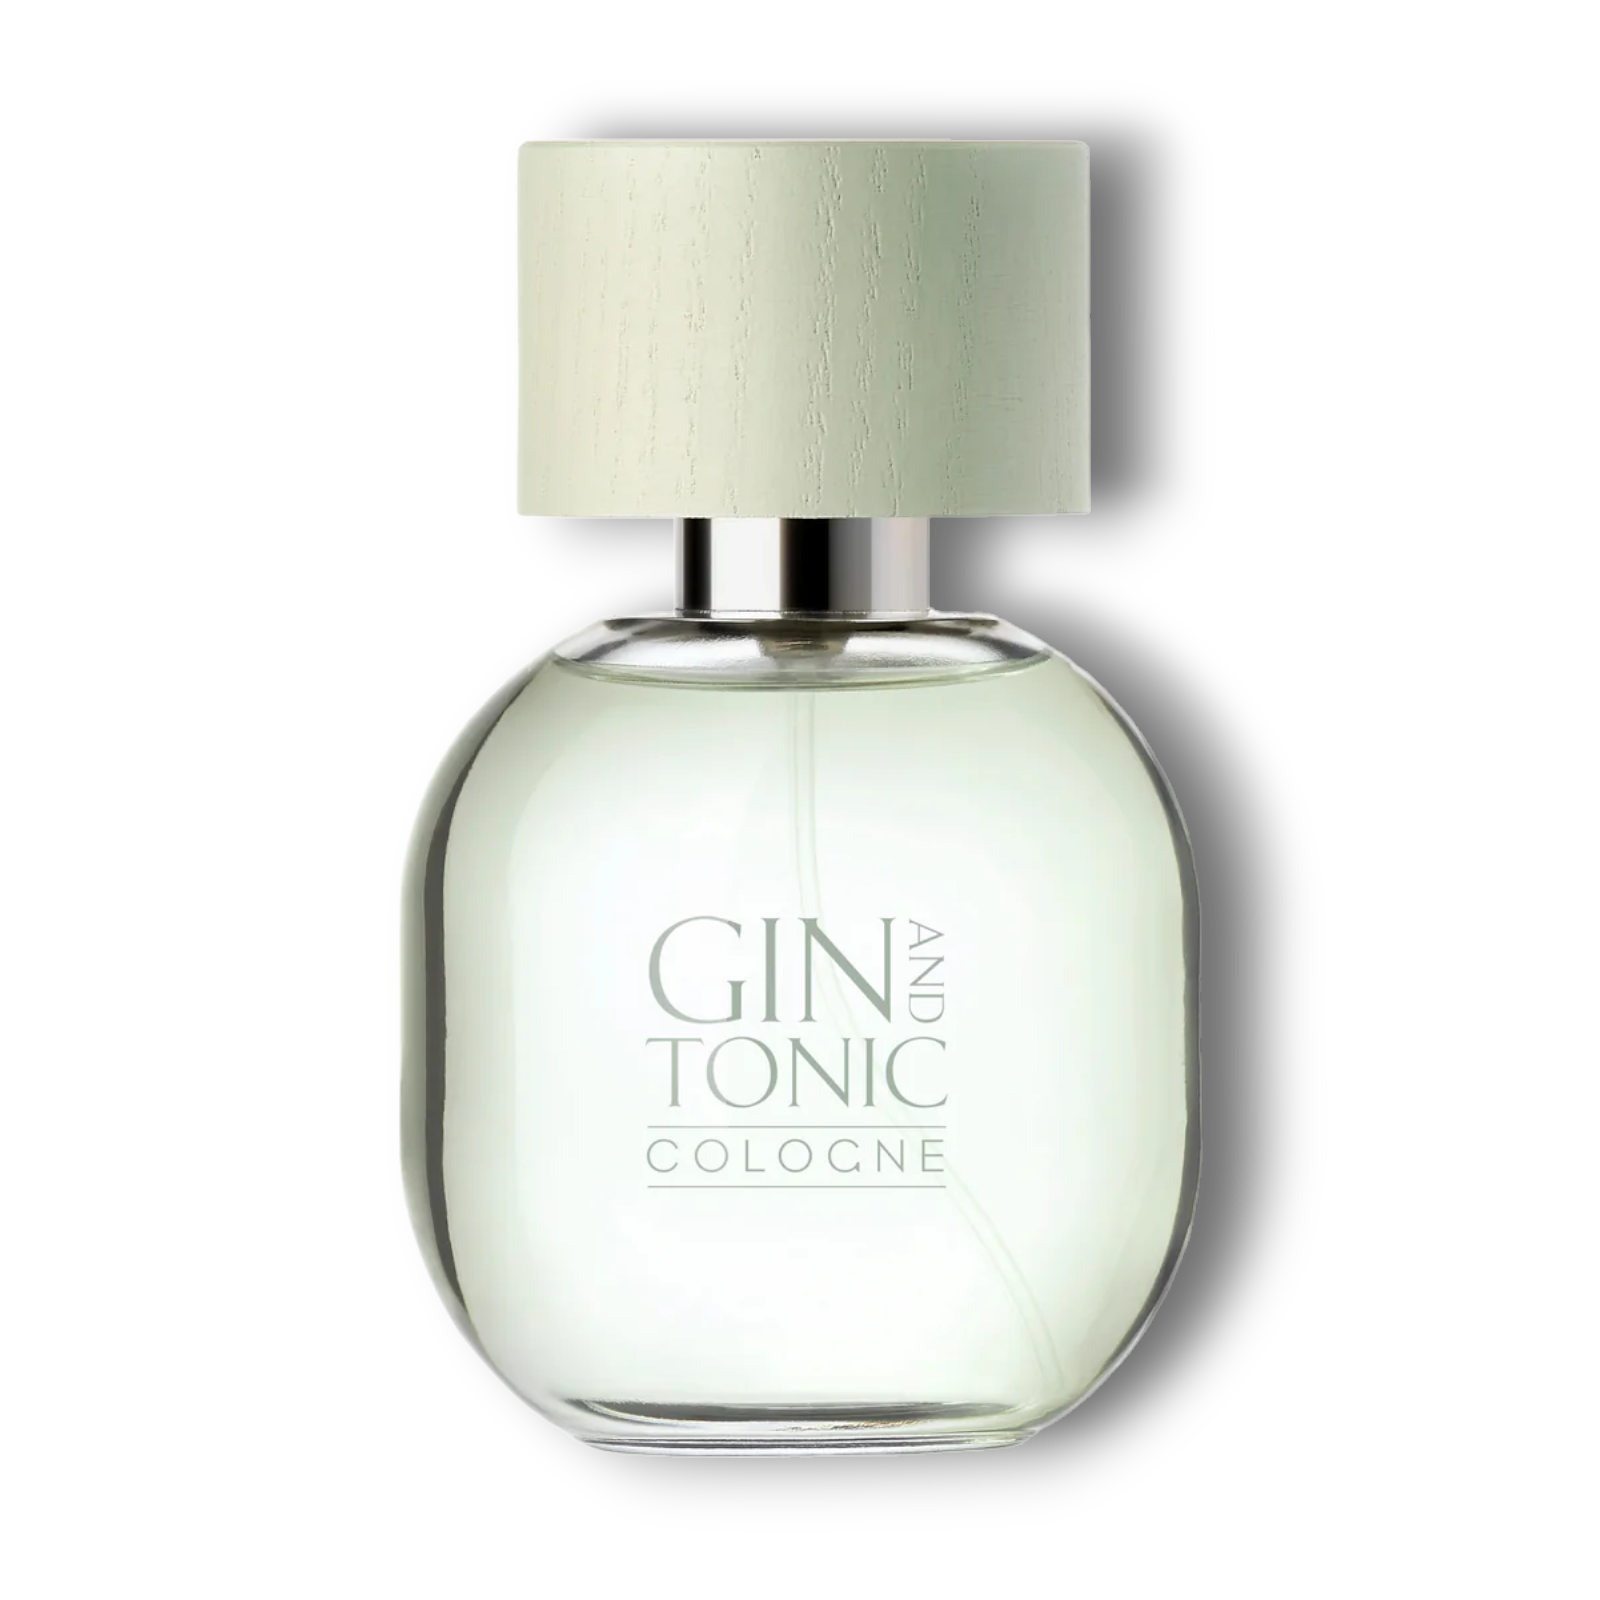 Gin and Tonic Cologne Art de Parfum